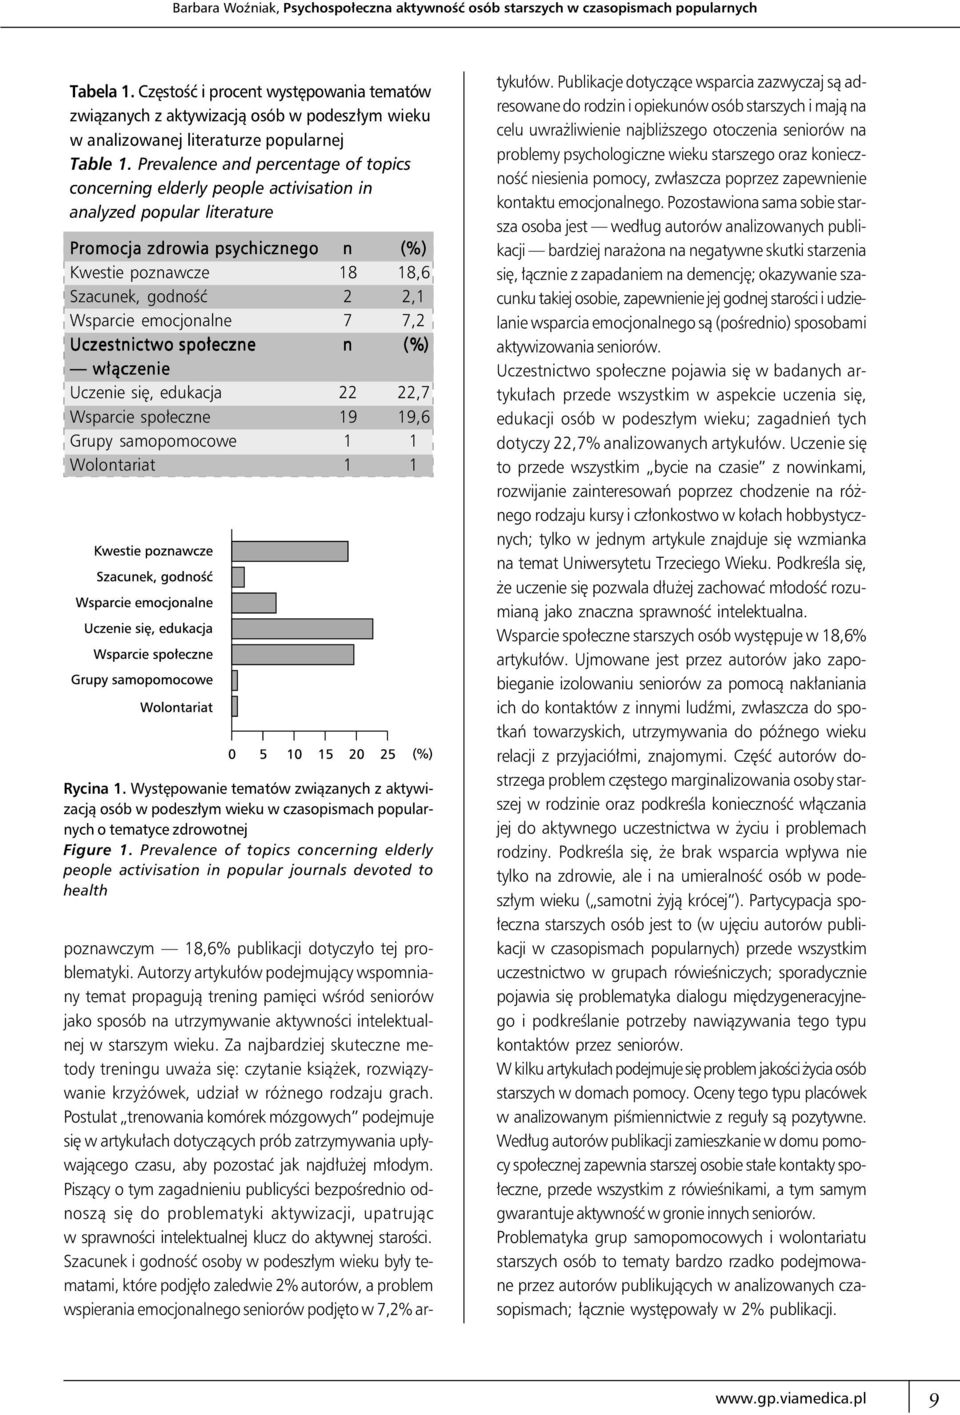 Prevalence and percentage of topics concerning elderly people activisation in analyzed popular literature Promocja zdrowia psychicznego n (%) Kwestie poznawcze 18 18,6 Szacunek, godność 2 2,1